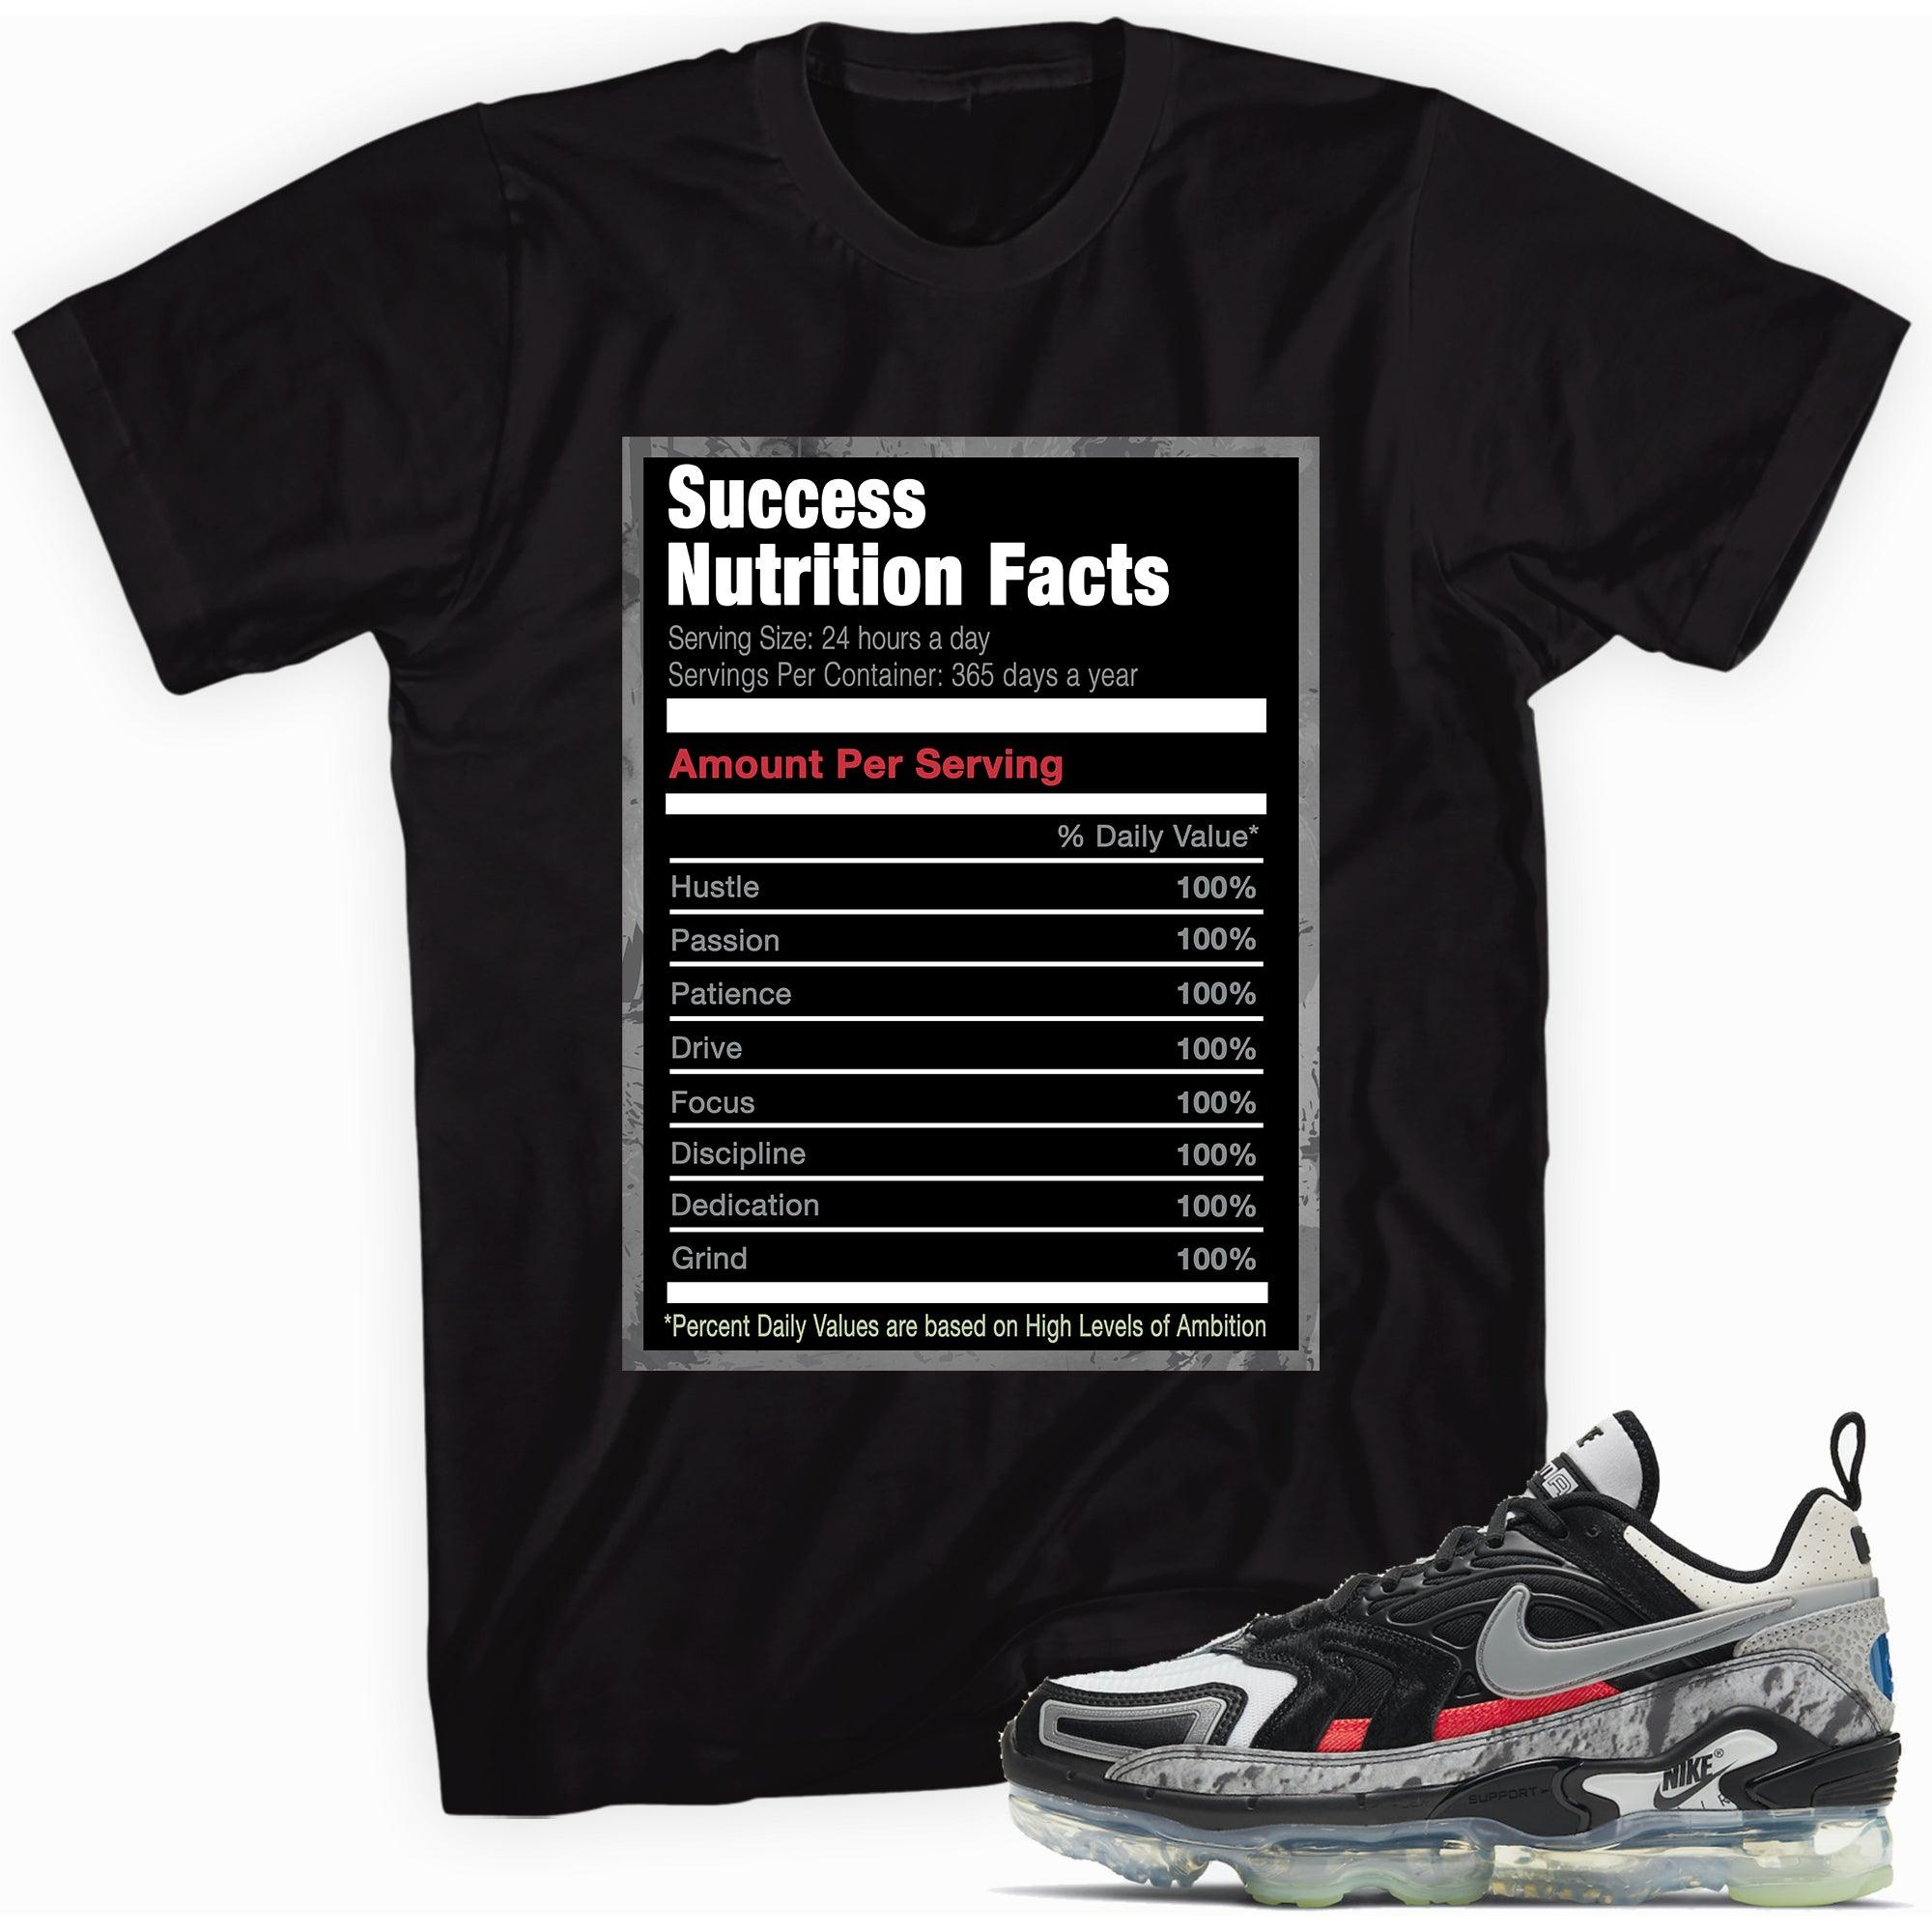 Success Nutrition Facts Shirt Air Vapormax Mashup photo